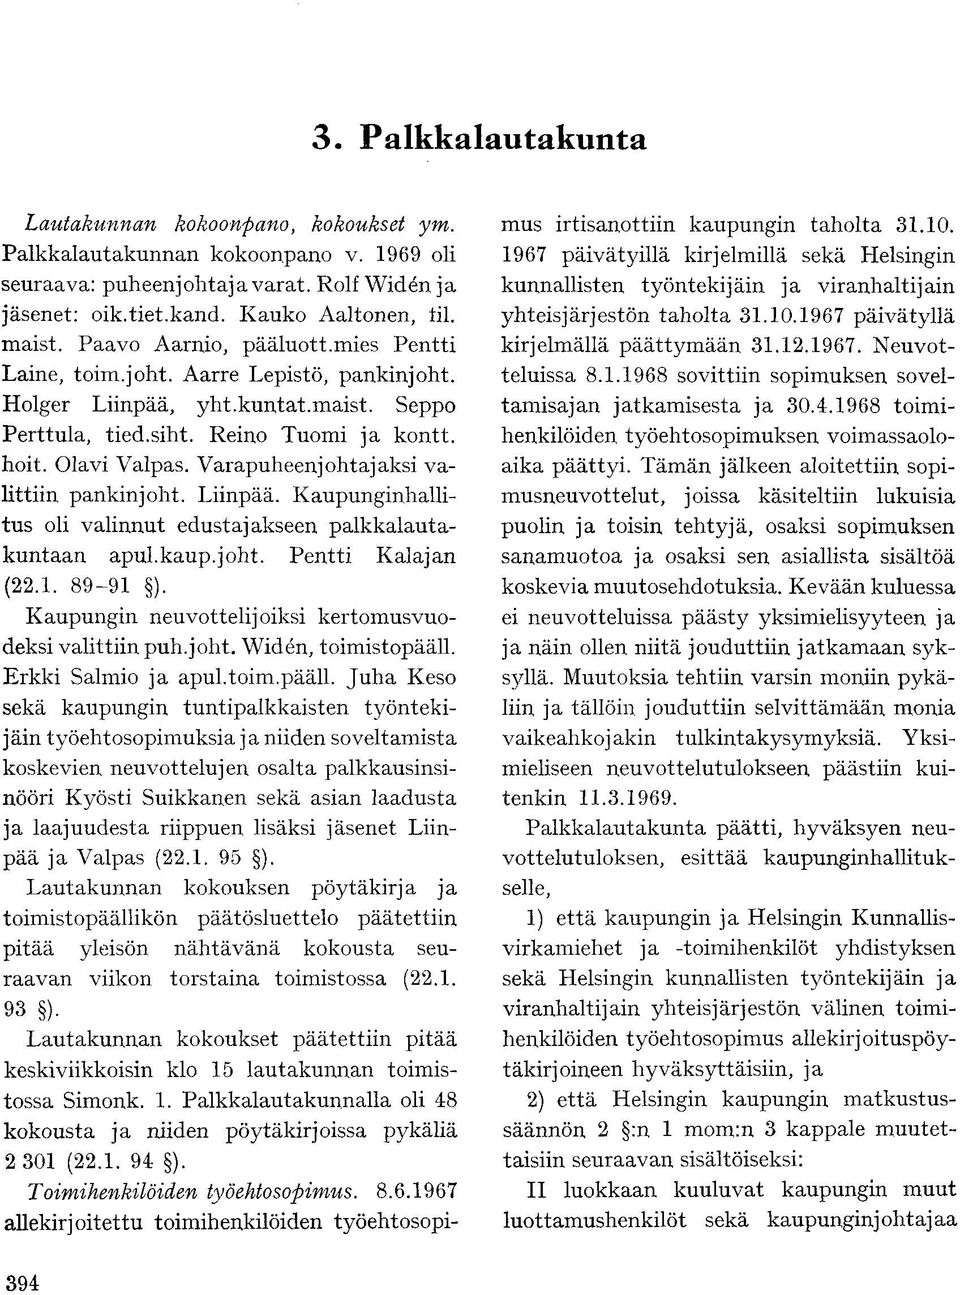 Varapuheenjohtajaksi valittiin pankinjoht. Liinpää. Kaupunginhallitus oli valinnut edustajakseen palkkalautakuntaan apul.kaup.joht. Pentti Kalajan (22.1. 89-91 ).